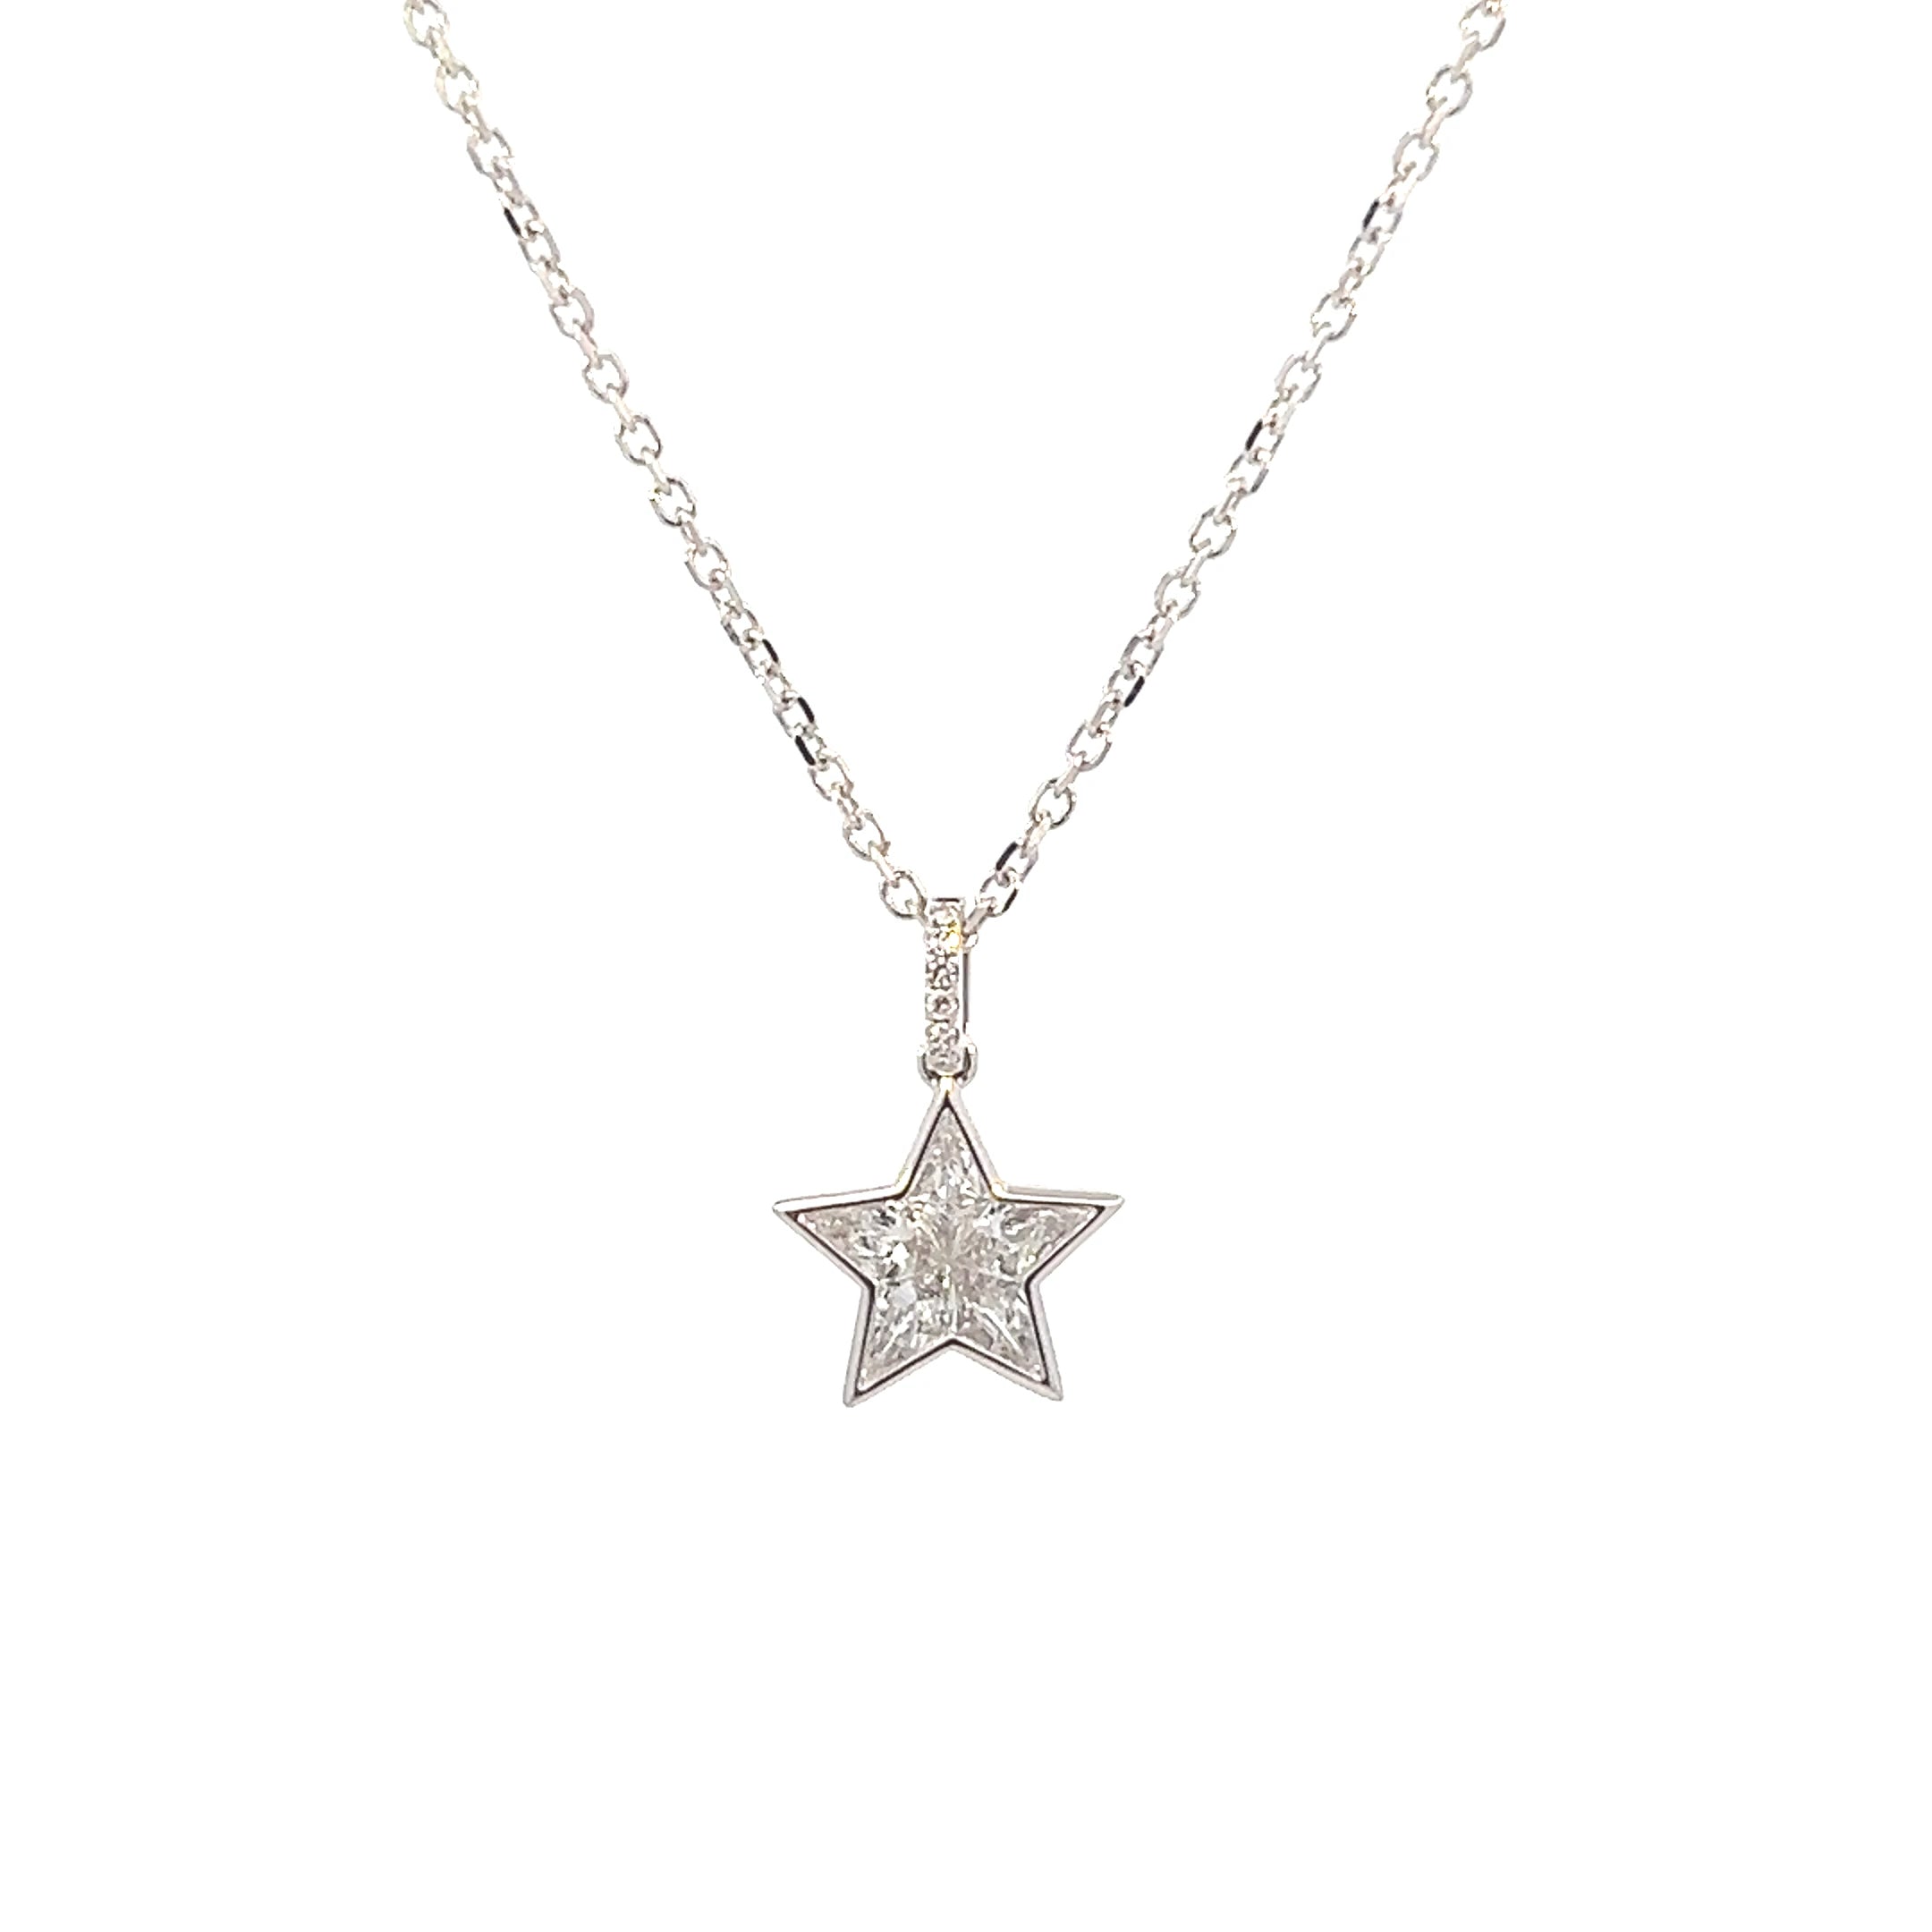 Celestial 18K White Gold Star Pendant